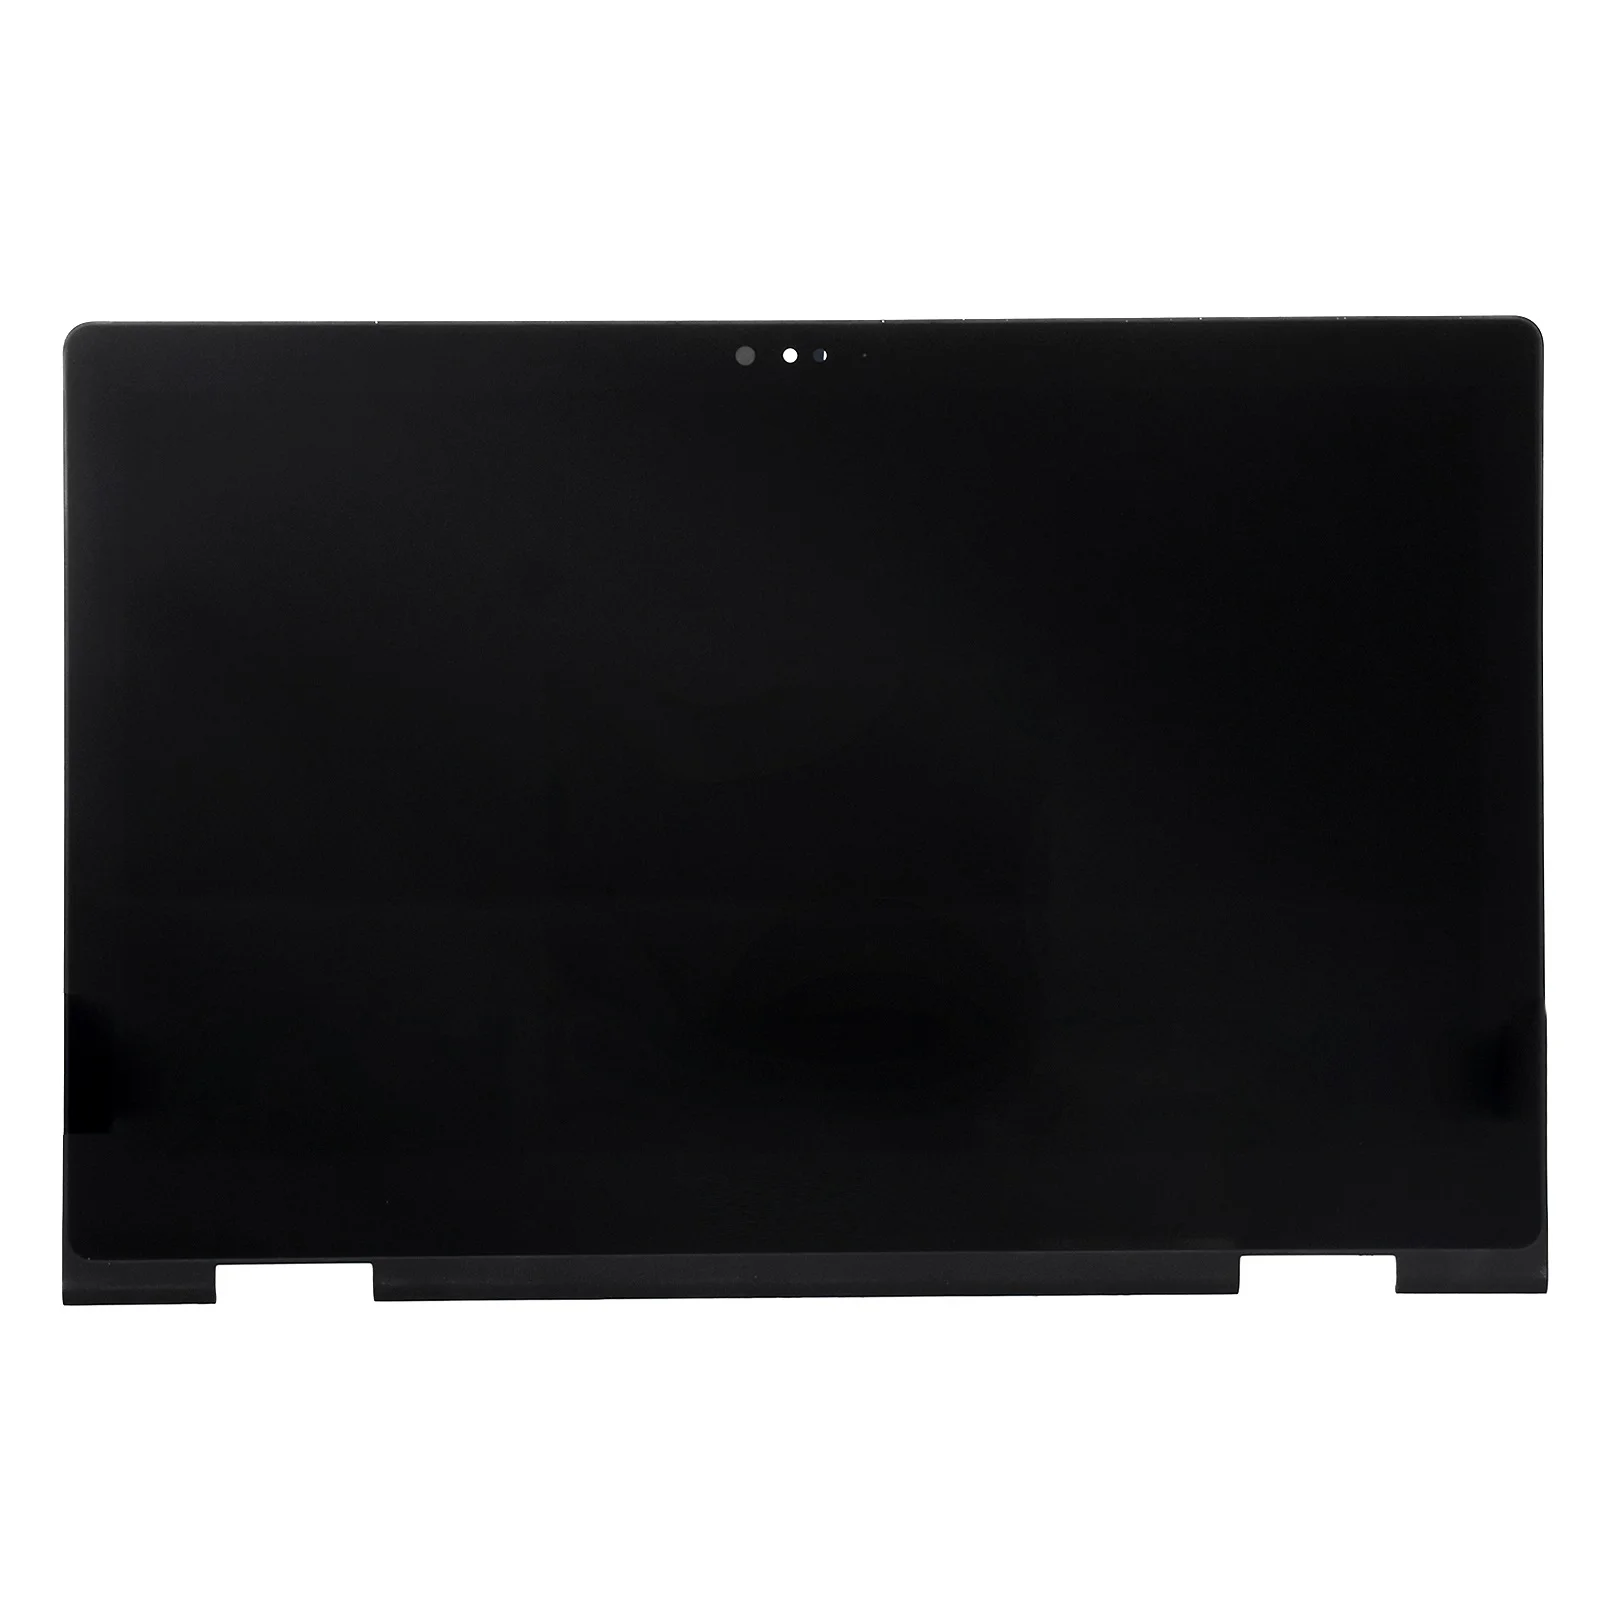 ЖК-экран для ноутбука Dell Inspiron 15 6 LP156WF7 SP EC 7559*1920 светодиодный сенсорный экран в